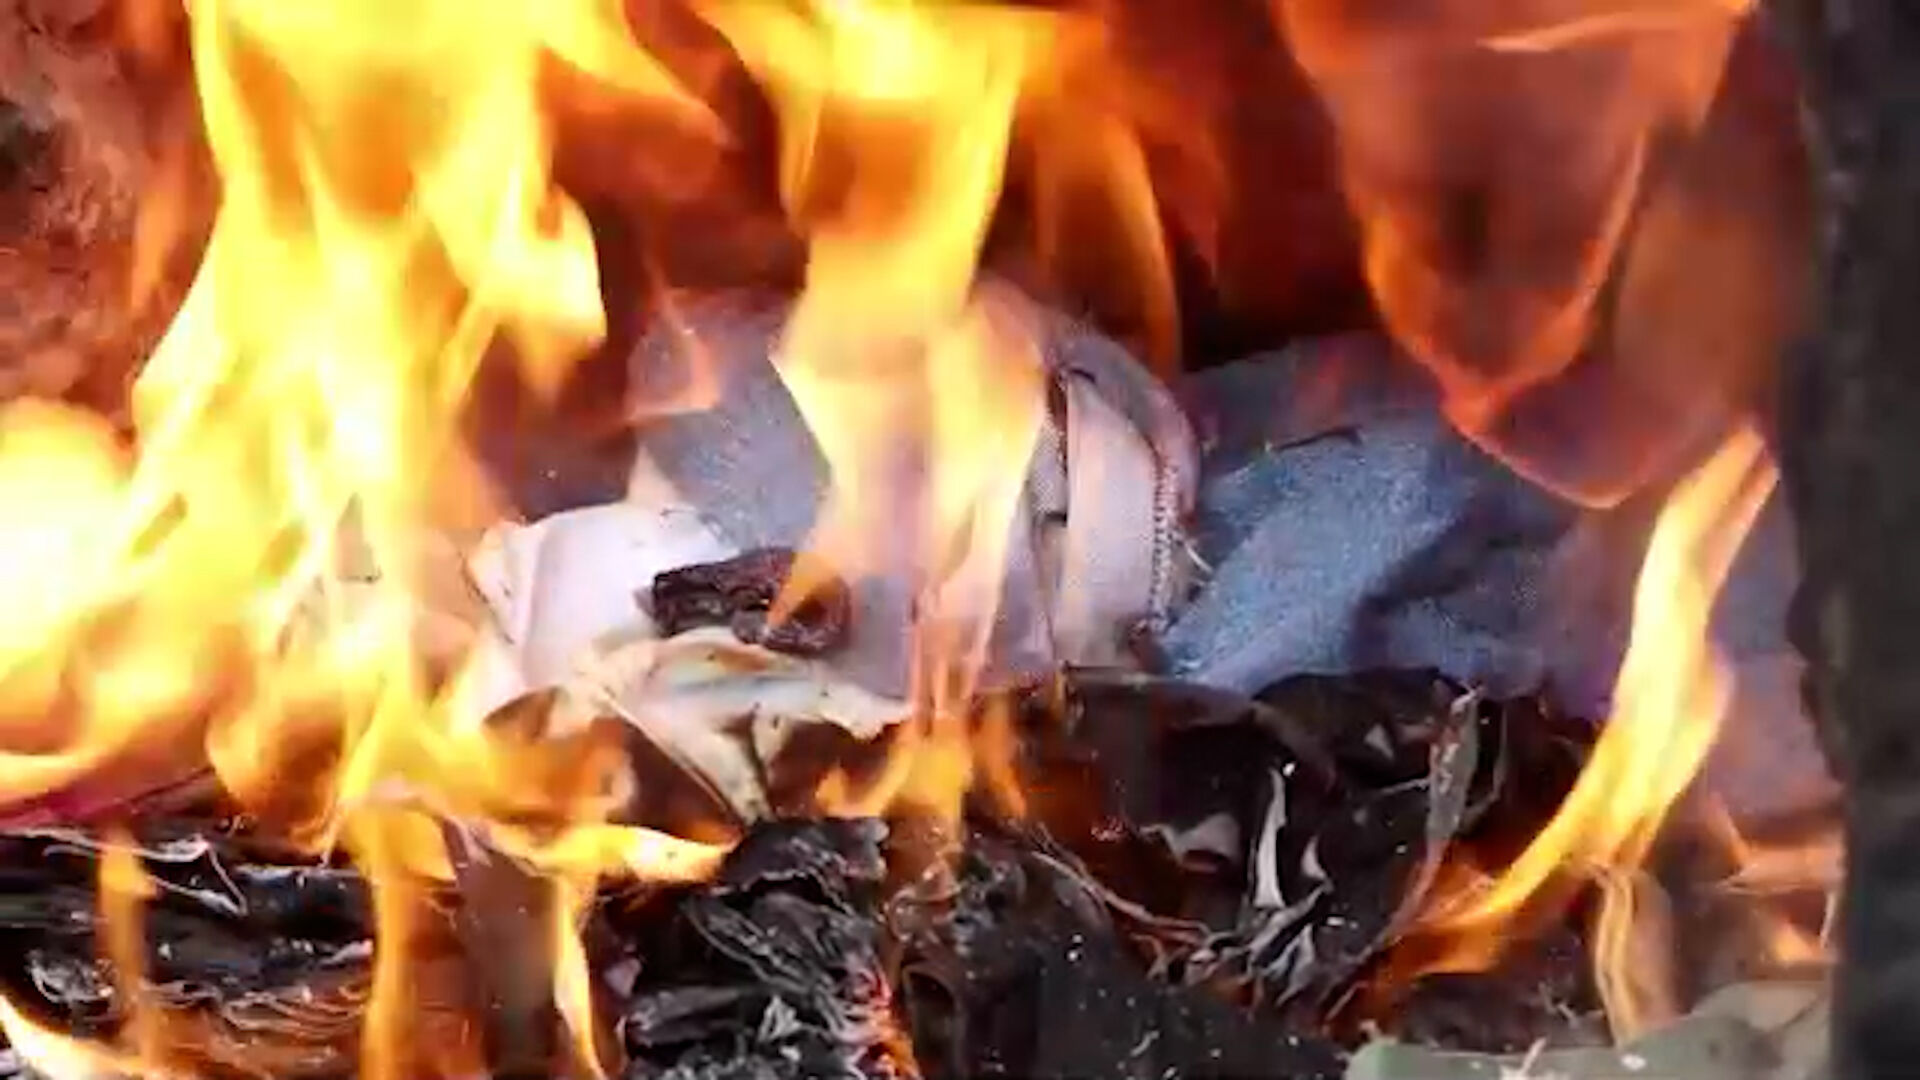 Alleen goed genoeg om op te stoken: onze goedkope kleren gedumpt en verbrand worden in Kenia | VRT NWS: nieuws